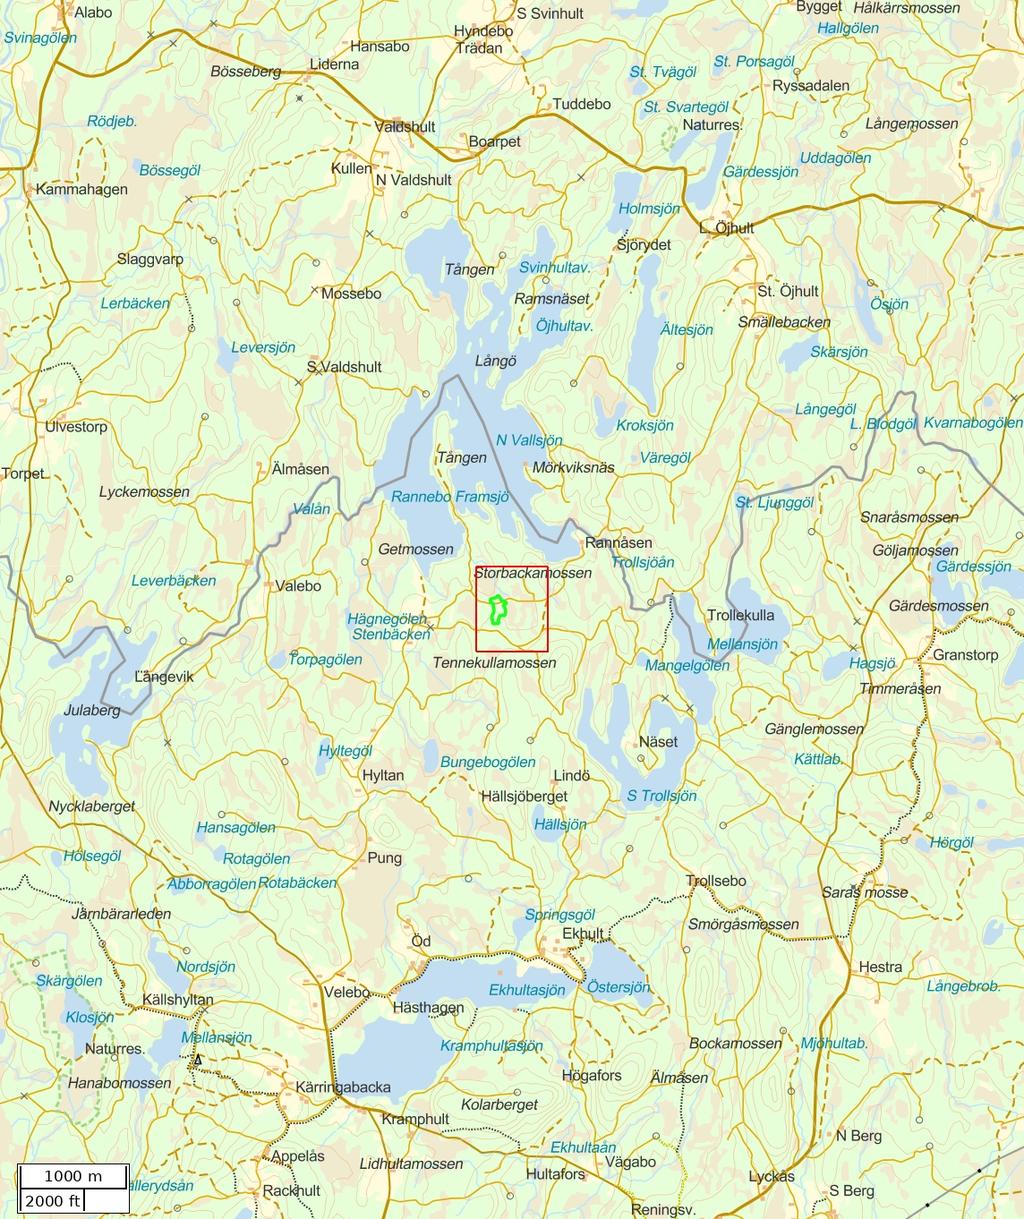 Traktdirektiv 18-03-28 21:38 Rannebo 1:4 avd 33 Hushållningssällskapet Skog Översiktskarta Skala: ~1:50000